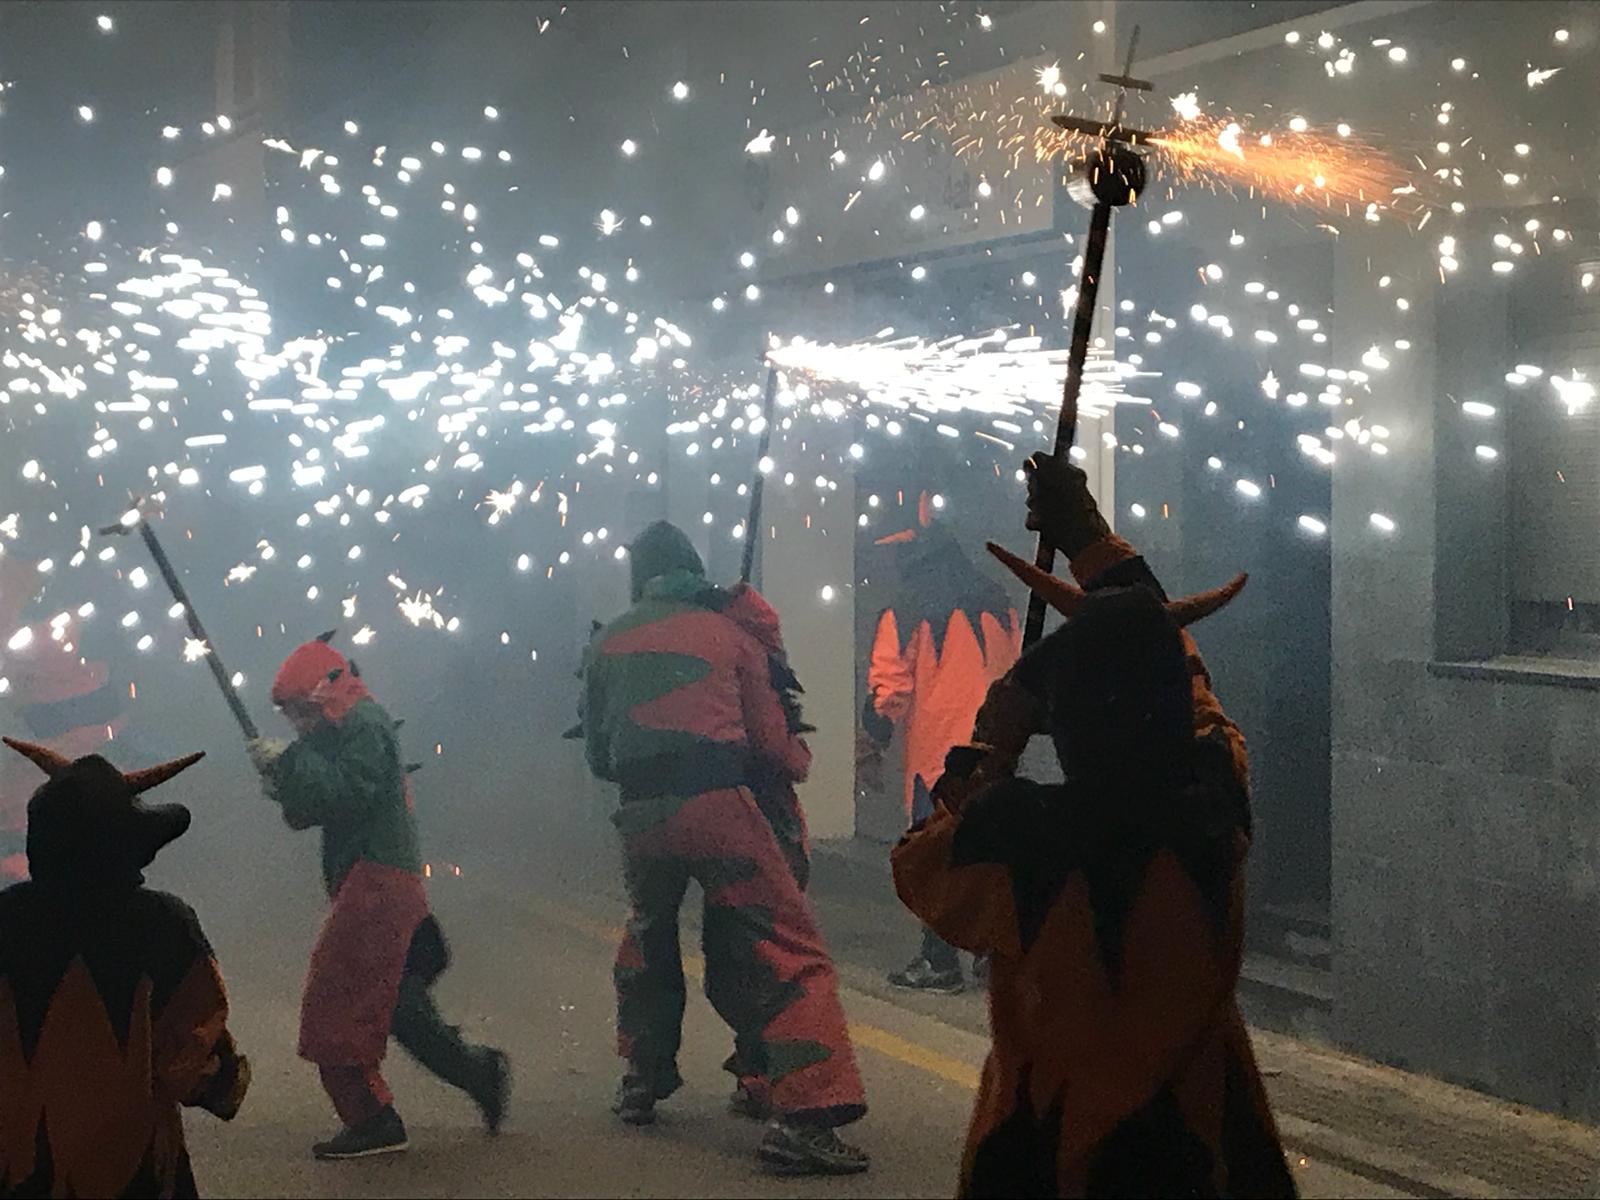 Festa major de Sant Nicolau:  Versots i espectacle de foc